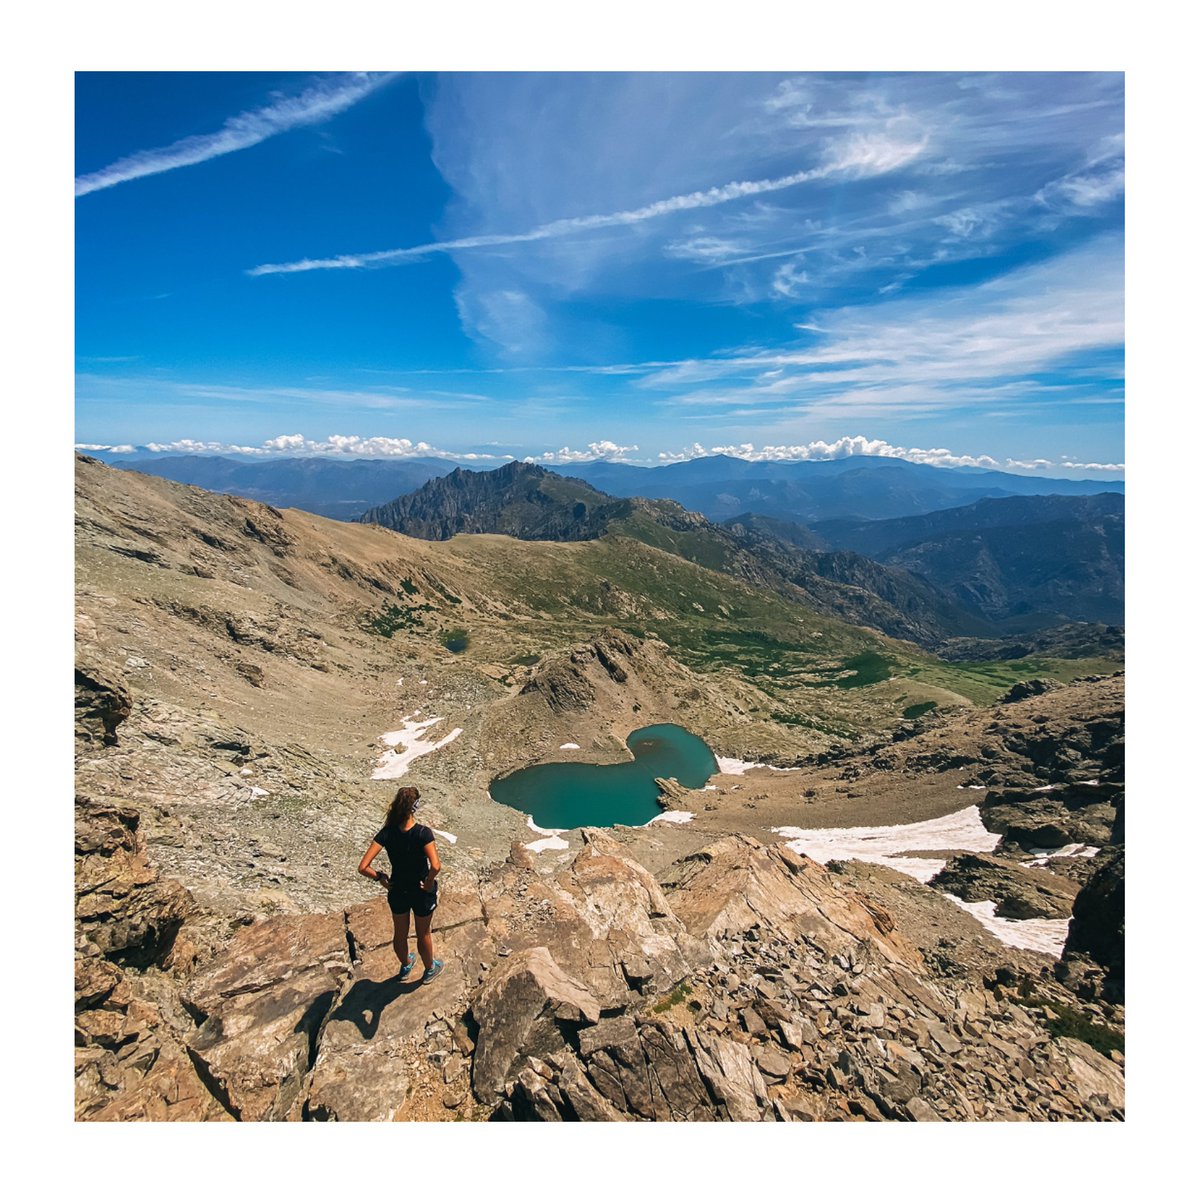 Lago di Maggiore

Un luogo mozzafiato a est del Monte Cinto, nel cuore delle montagne corse.

📷© Barbara Cano Nadal

#Corsica #VisitCorsica #MiChjamuCorsica #Montagne #Fiume #natura